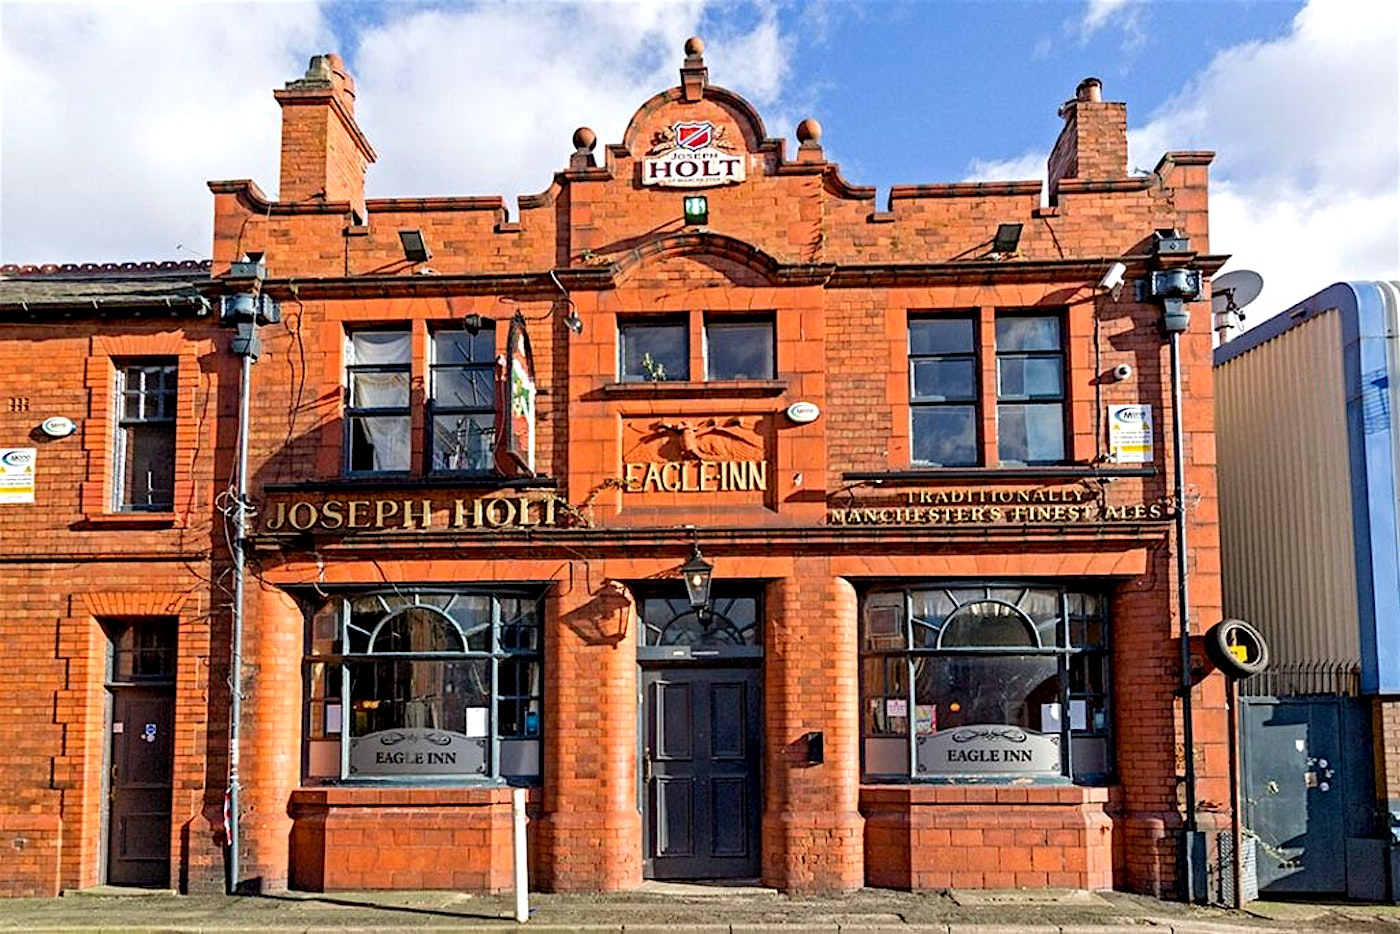 The Eagle Inn Manchester pub 1